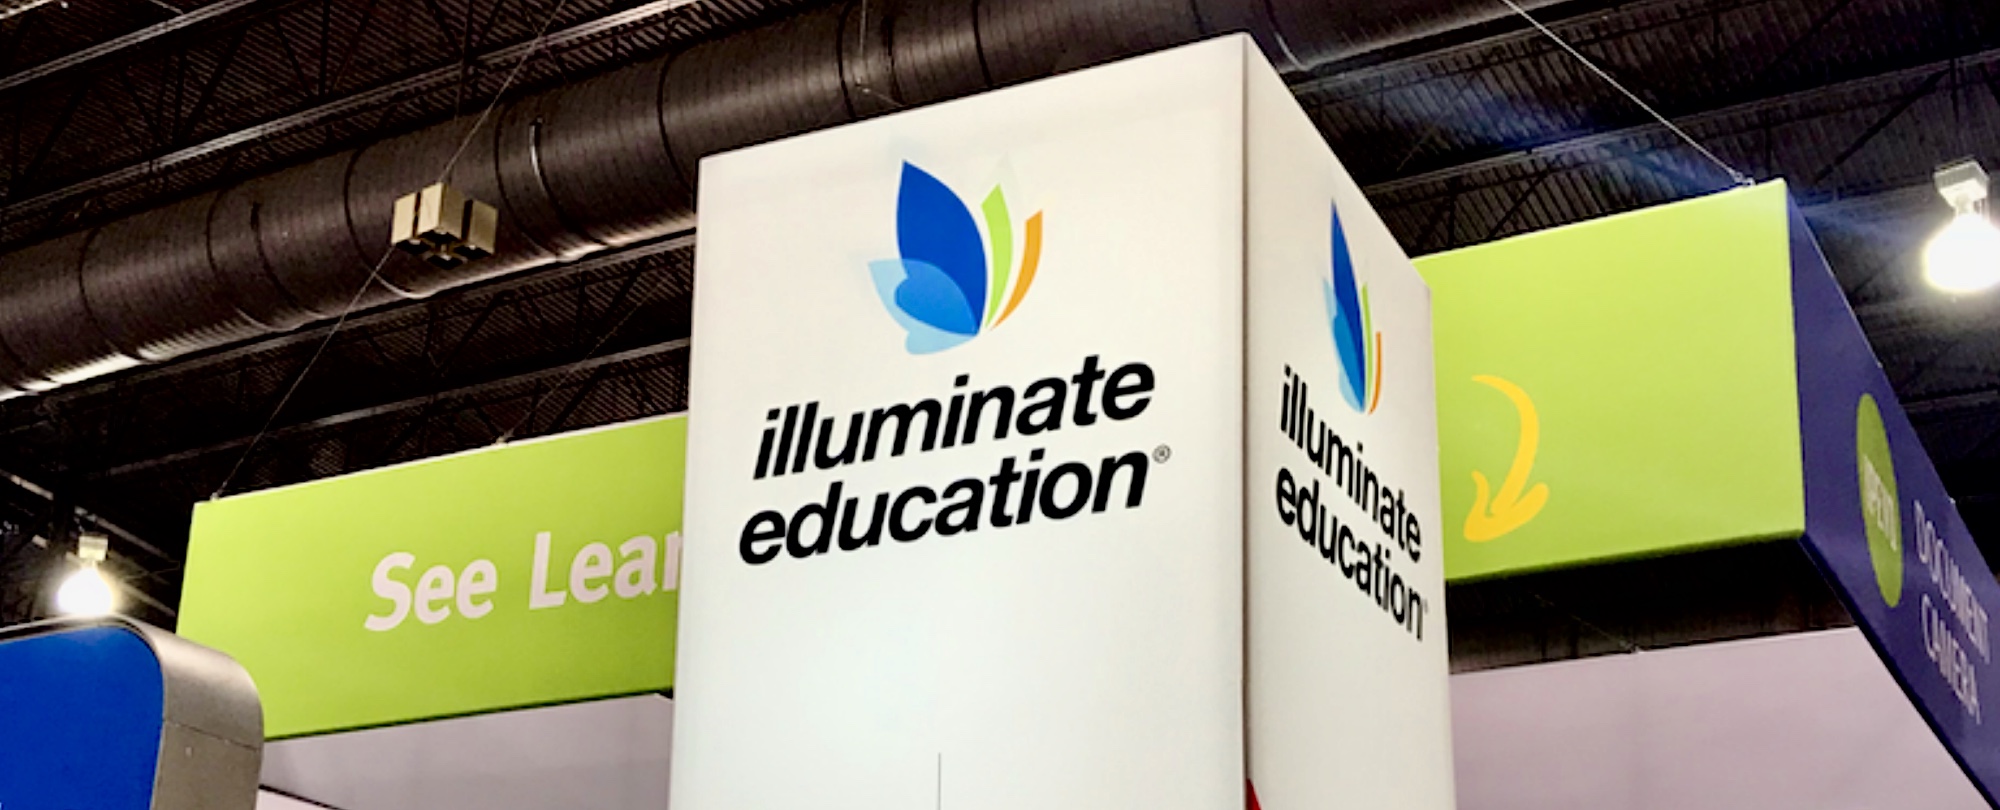 illuminate edu